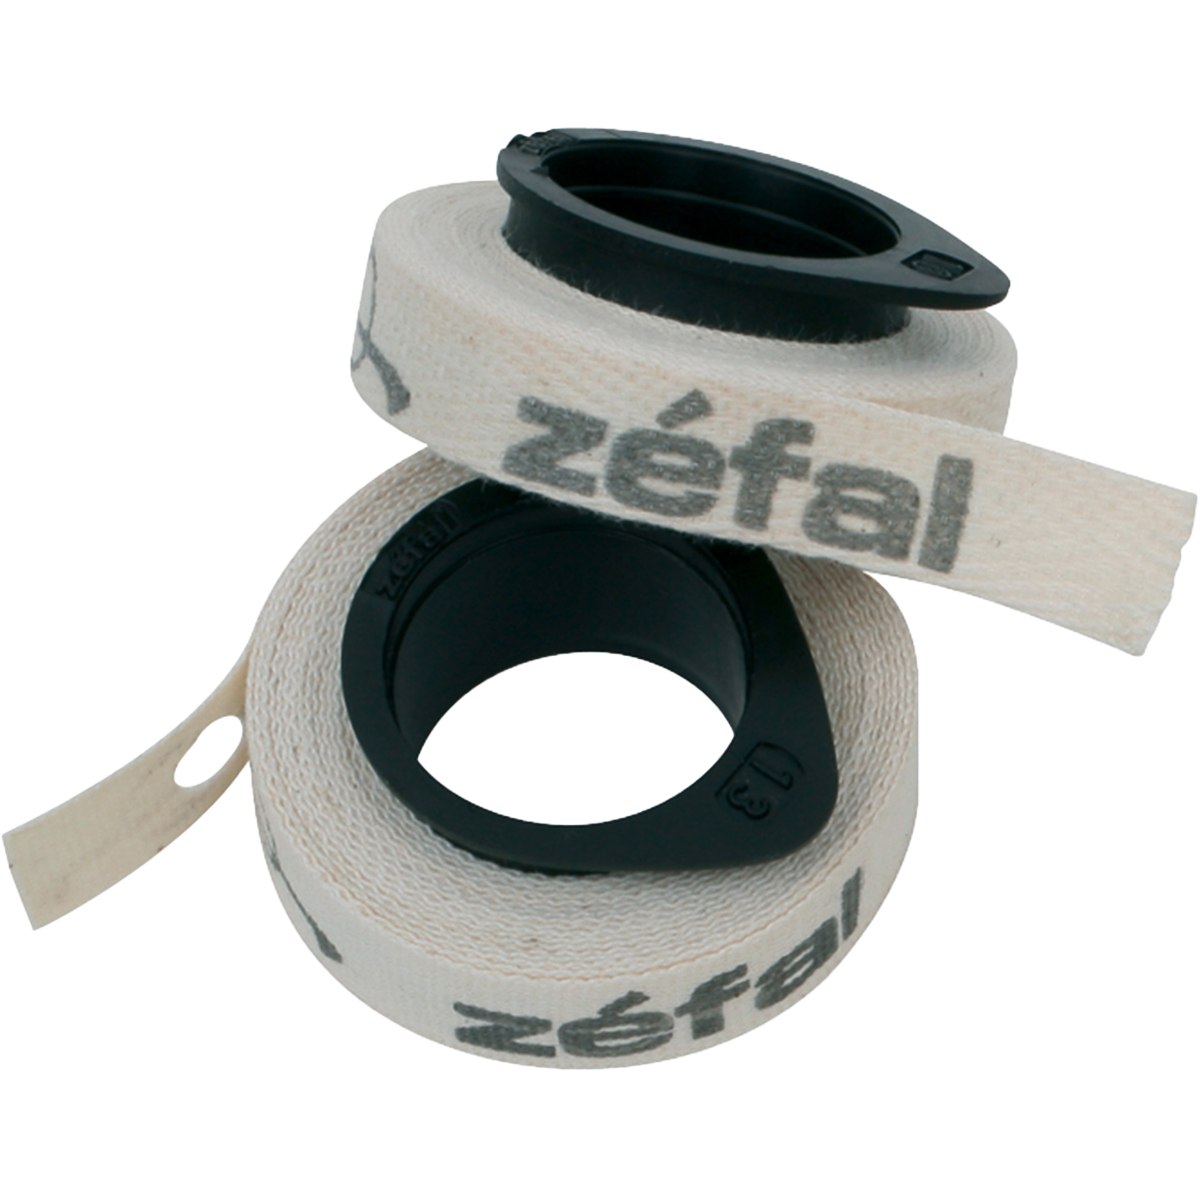 Picture of Zéfal Cotton Tapes Anti-Puncture Rim Strip - 2 pcs.